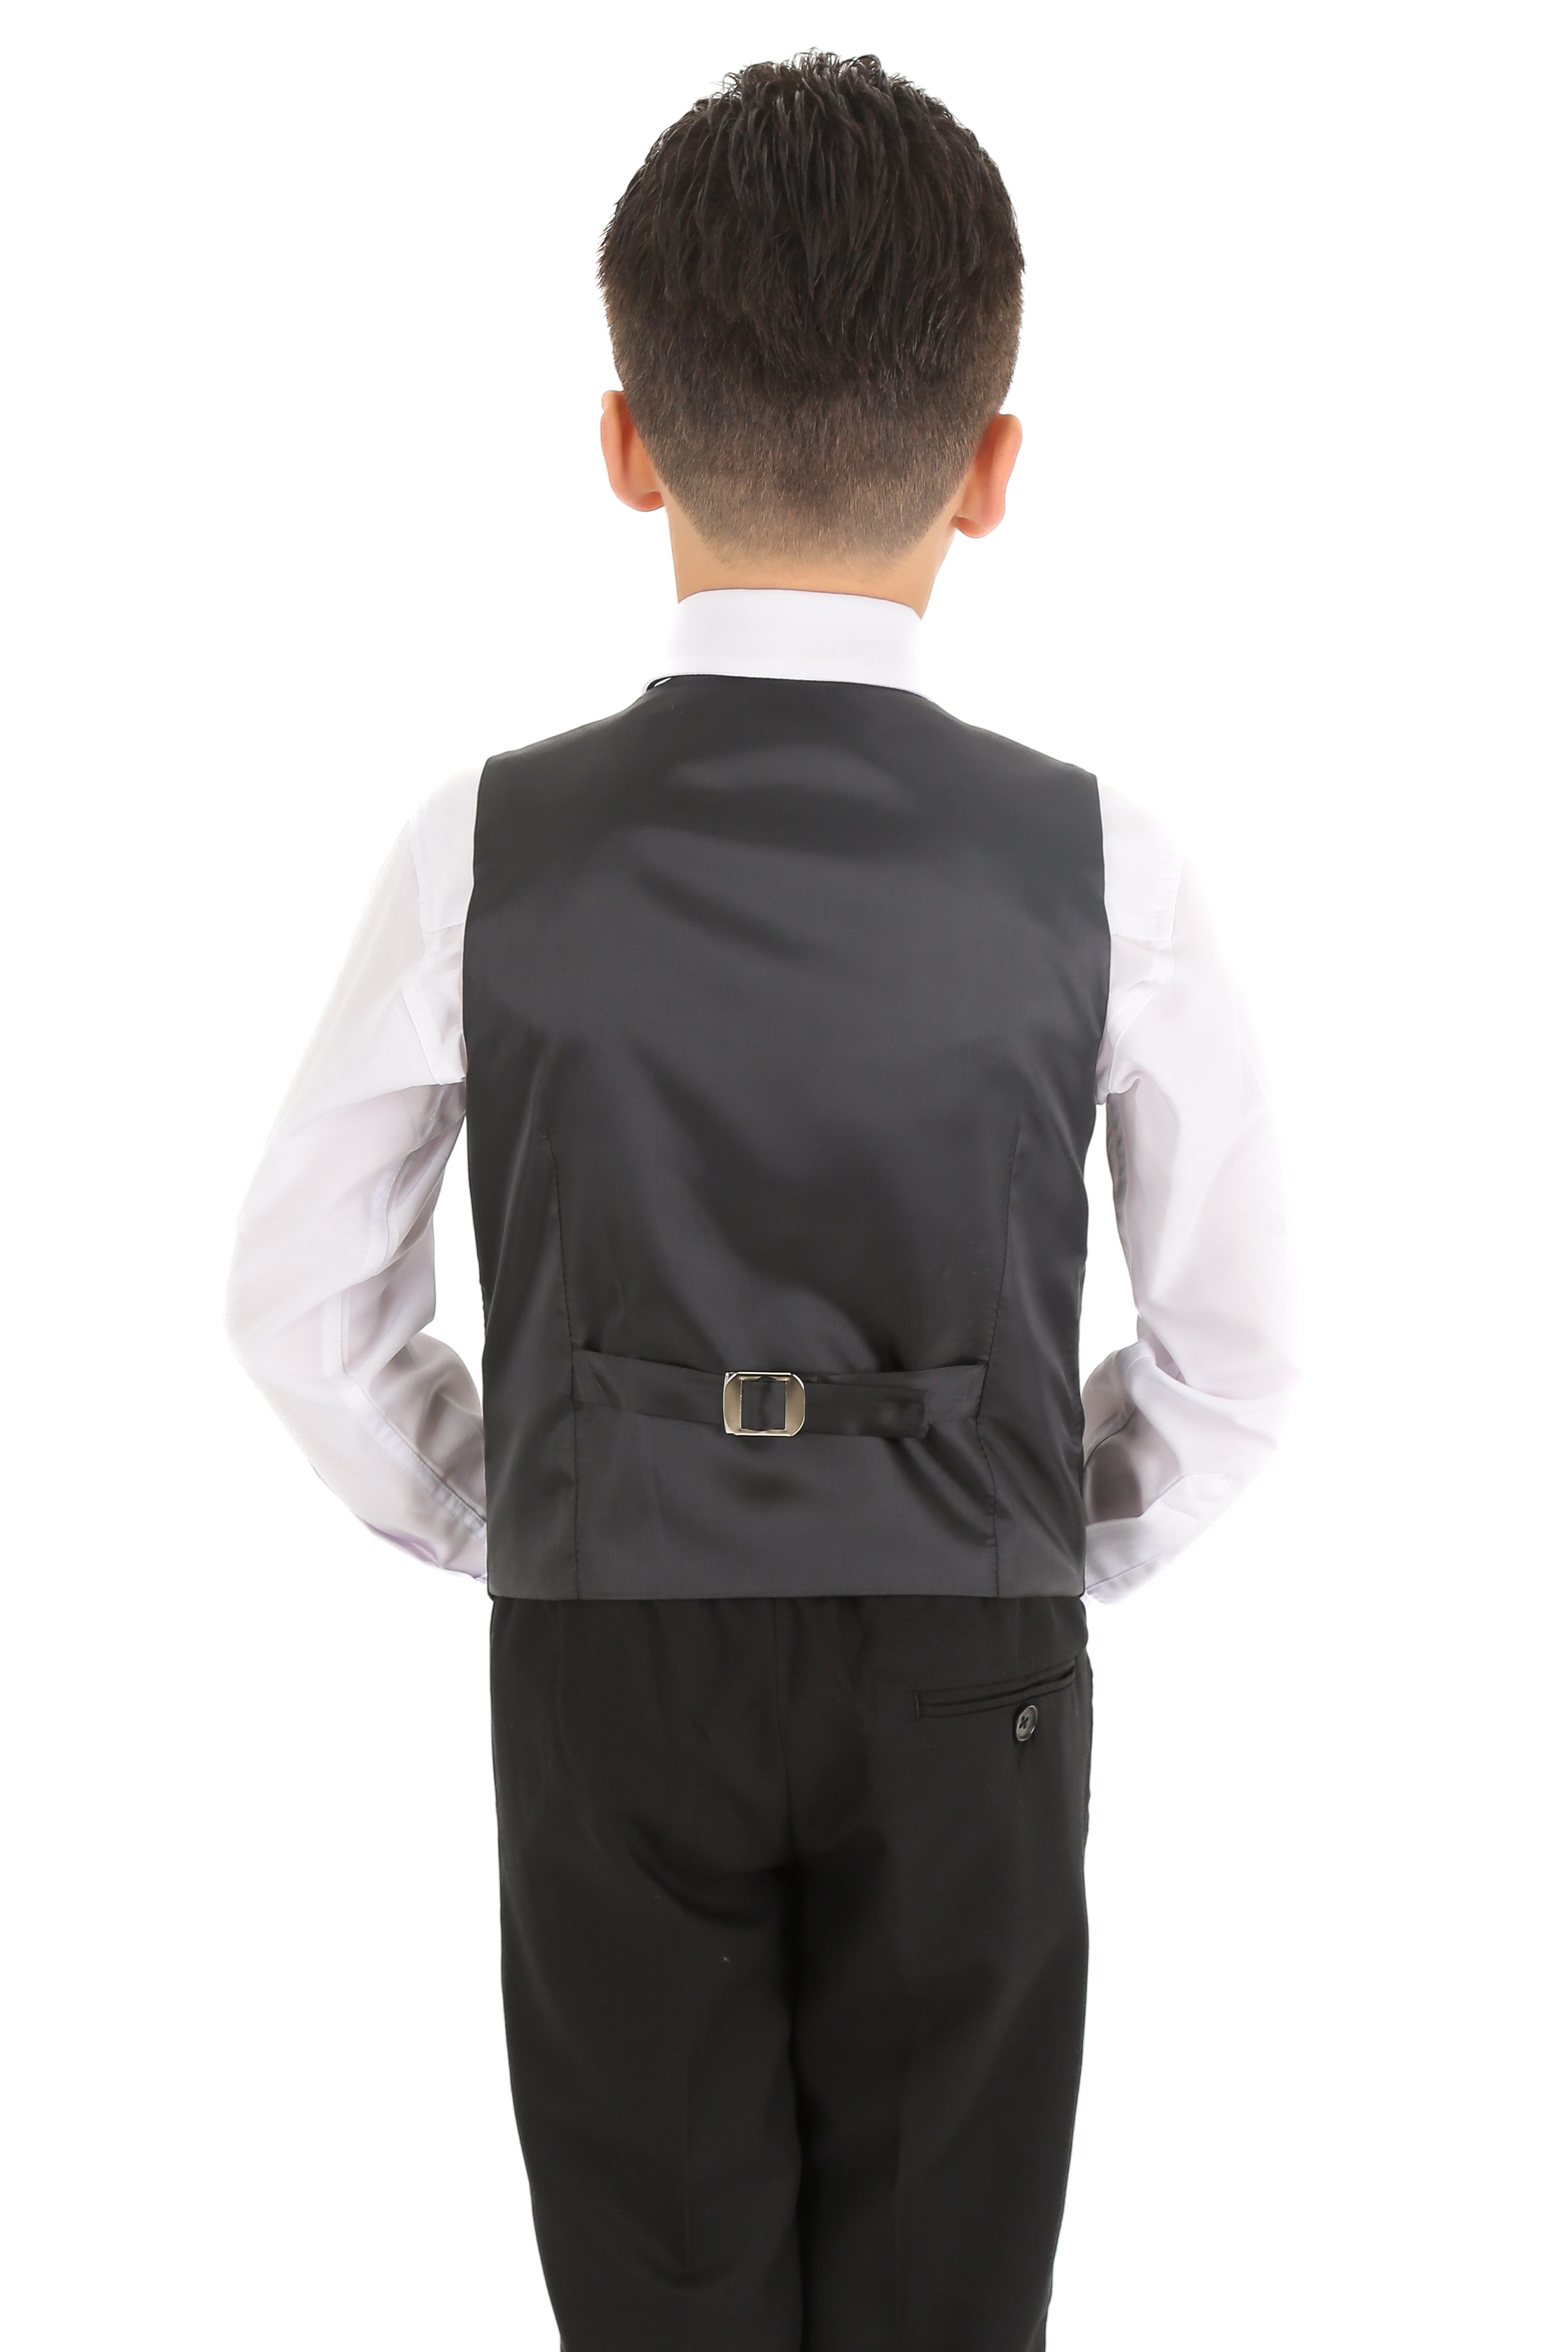 1-15 Yaş Erkek Çocuk King Özel Tasarım Takım Elbise 6 Parça - Siyah